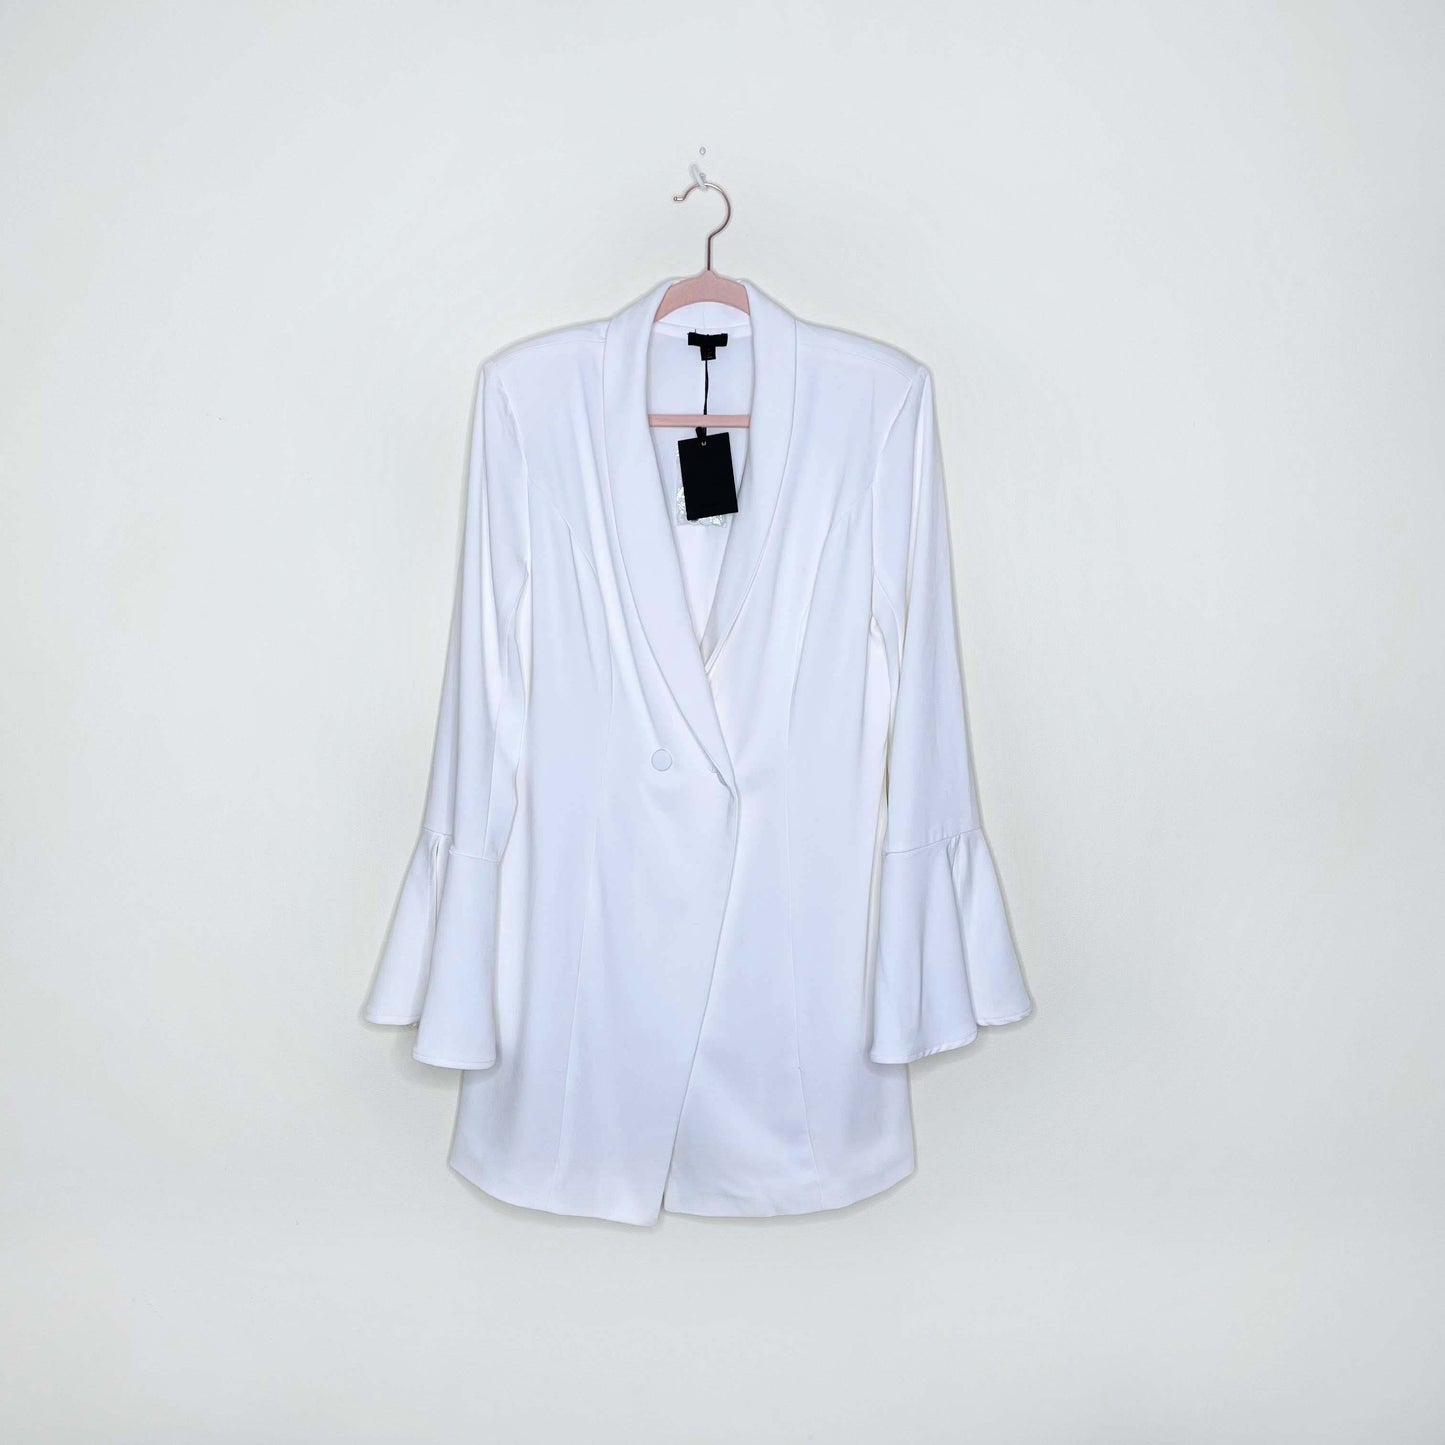 nwt nbd como la flor white suit dress - size medium